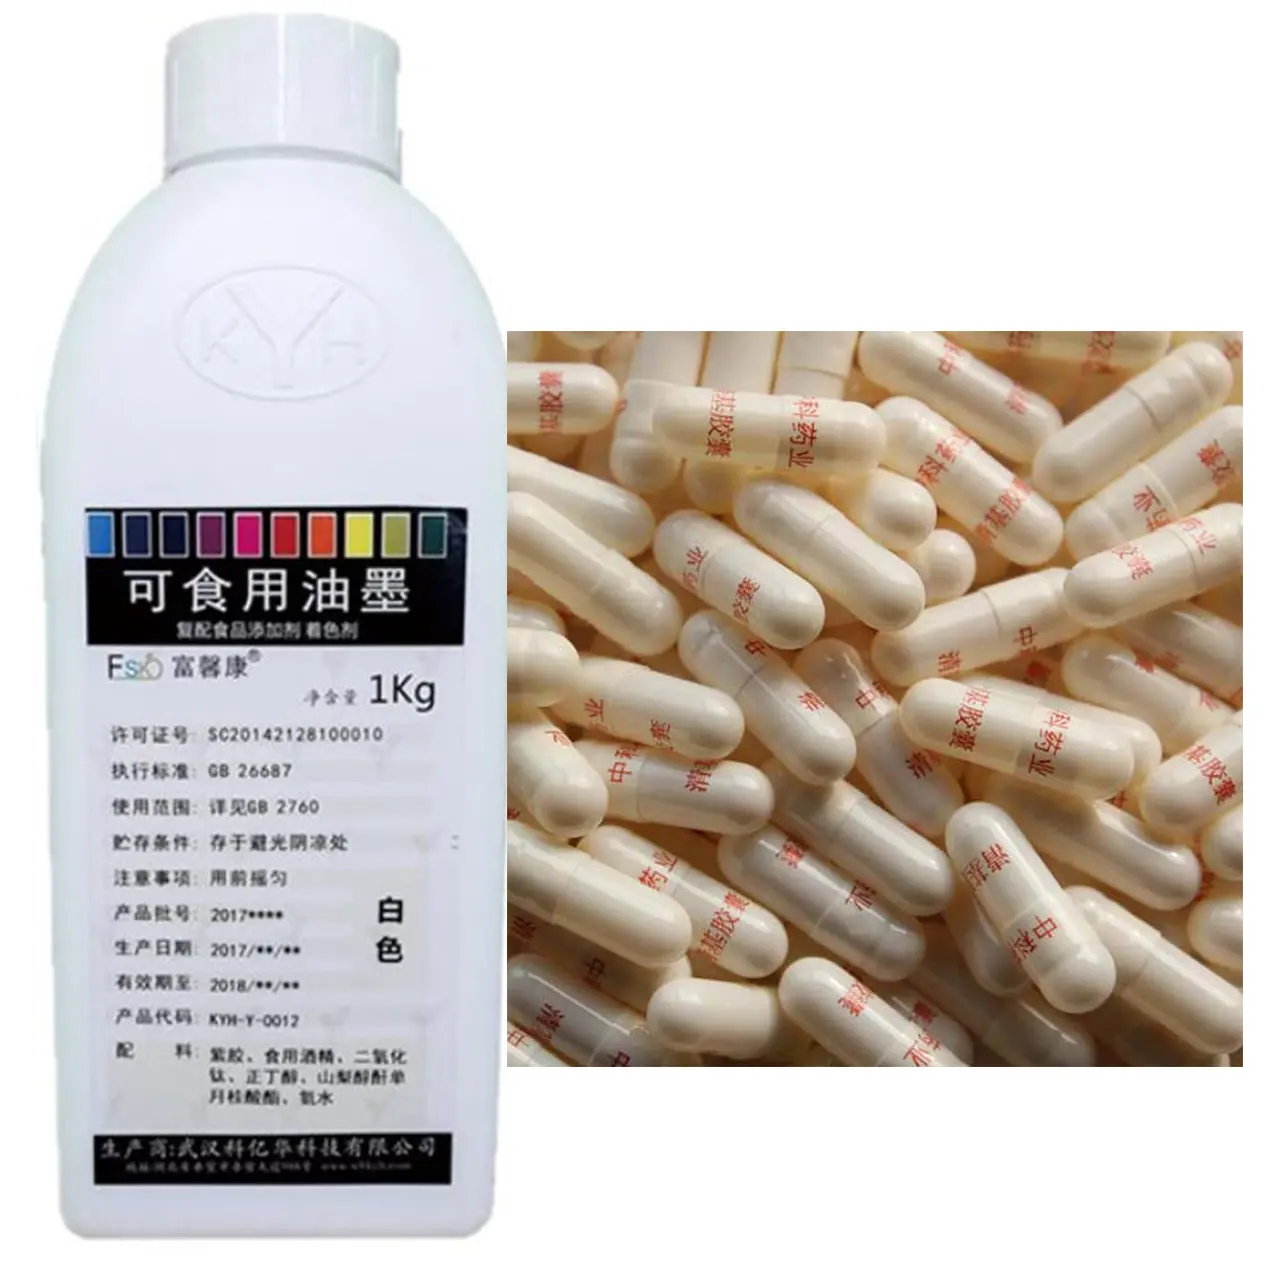 KYH-0012 titanyum dioksit beyaz kapsül baskı mürekkebi satılık